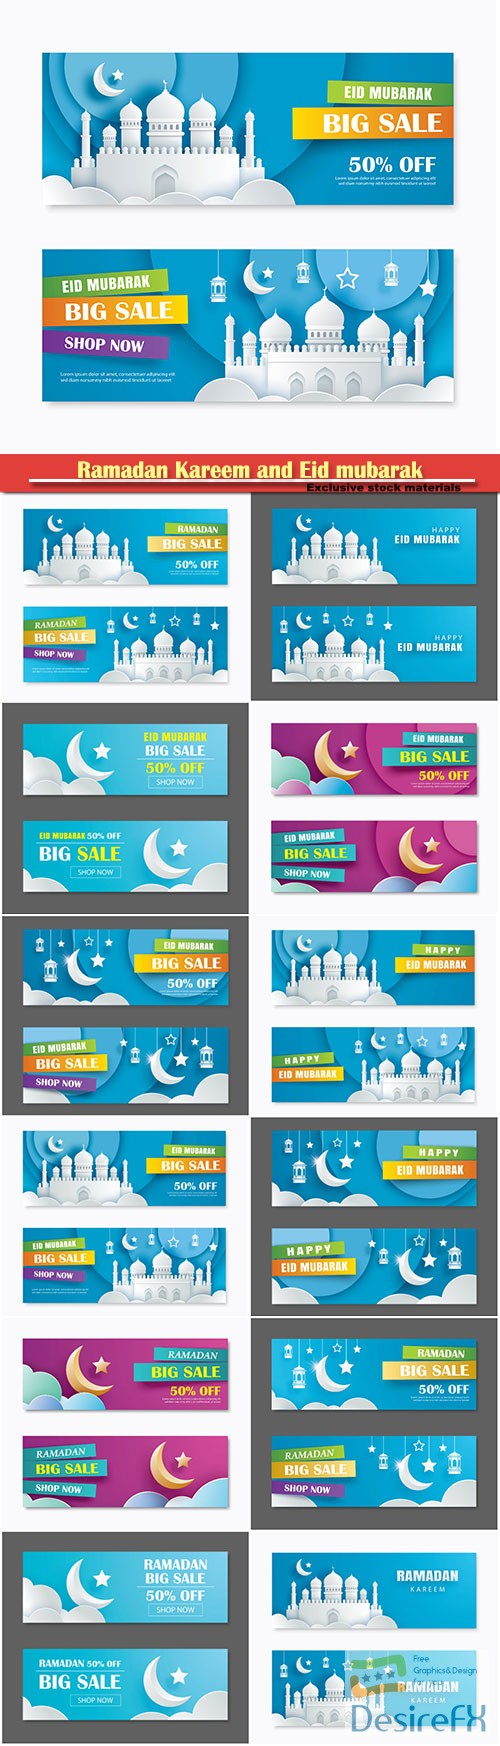 Ramadan Kareem and Eid mubarak sale vector banner design